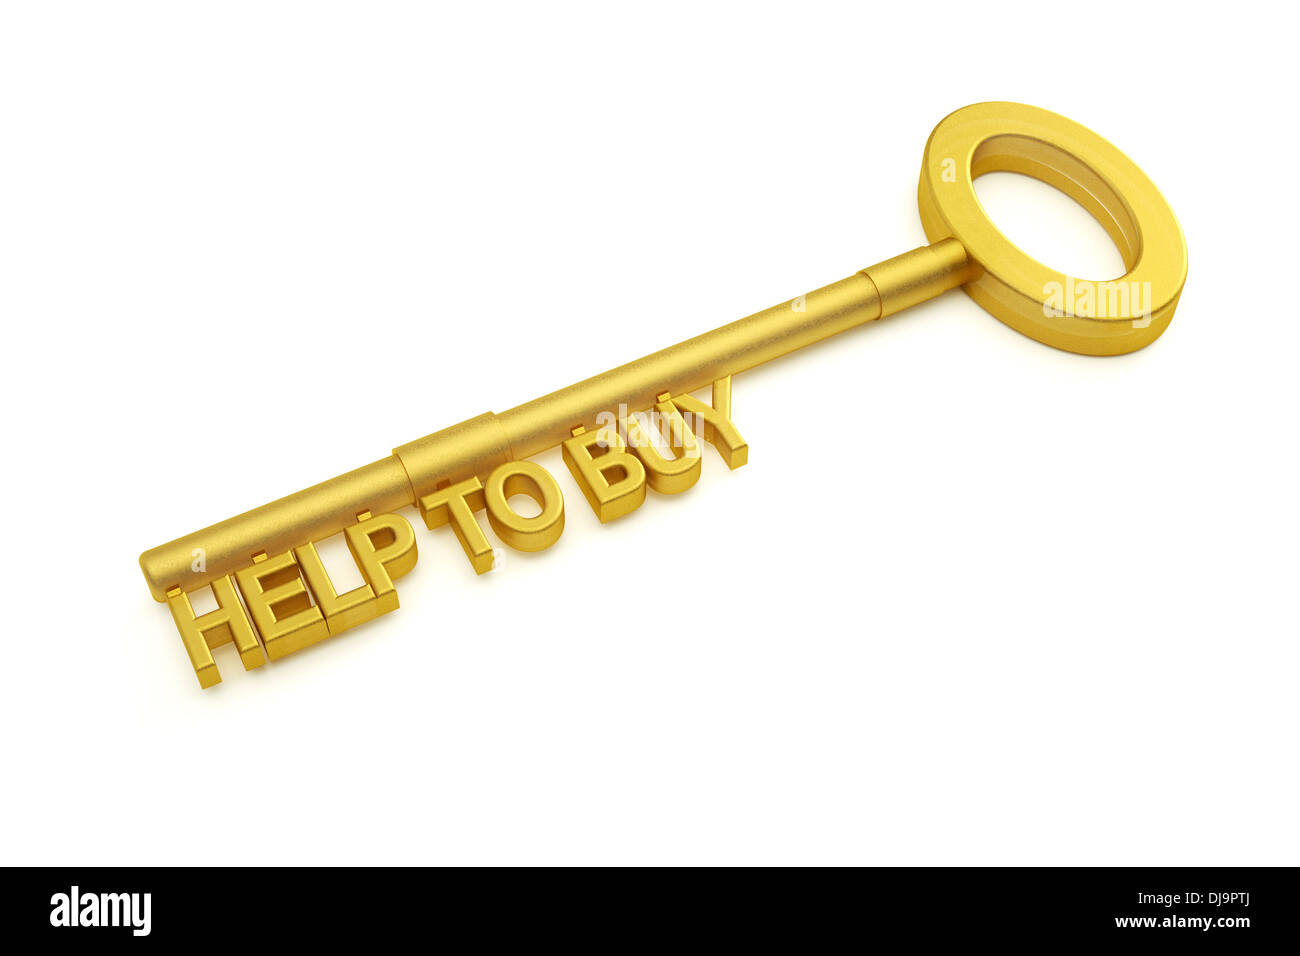 House door key with UK Help to Buy scheme words Stock Photo